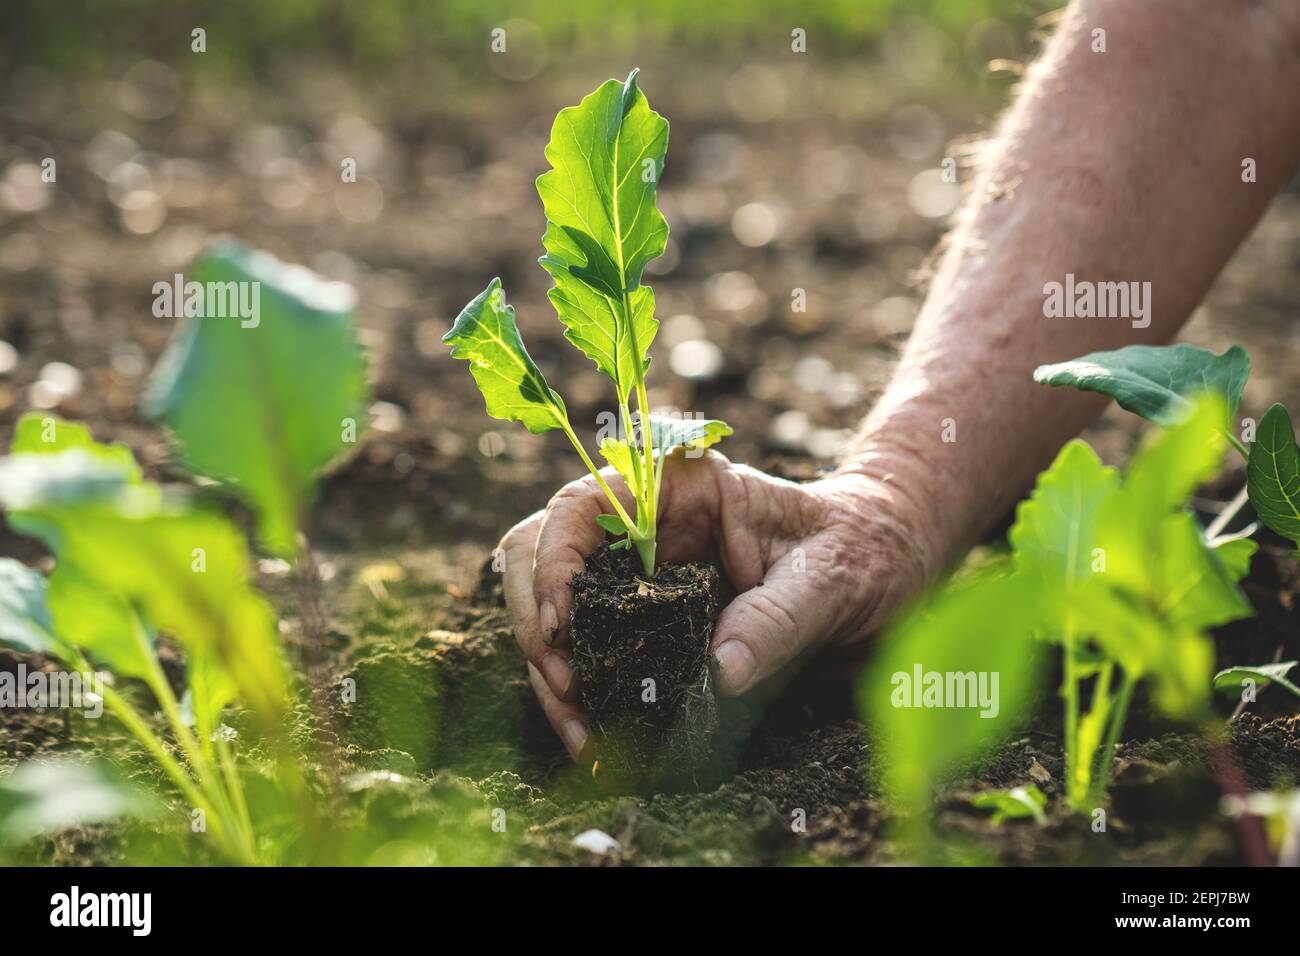 Planting vegetable seedling into soil. Farmer holding green kohlrabi plant in hand. Gardening in organic farm Stock Photo